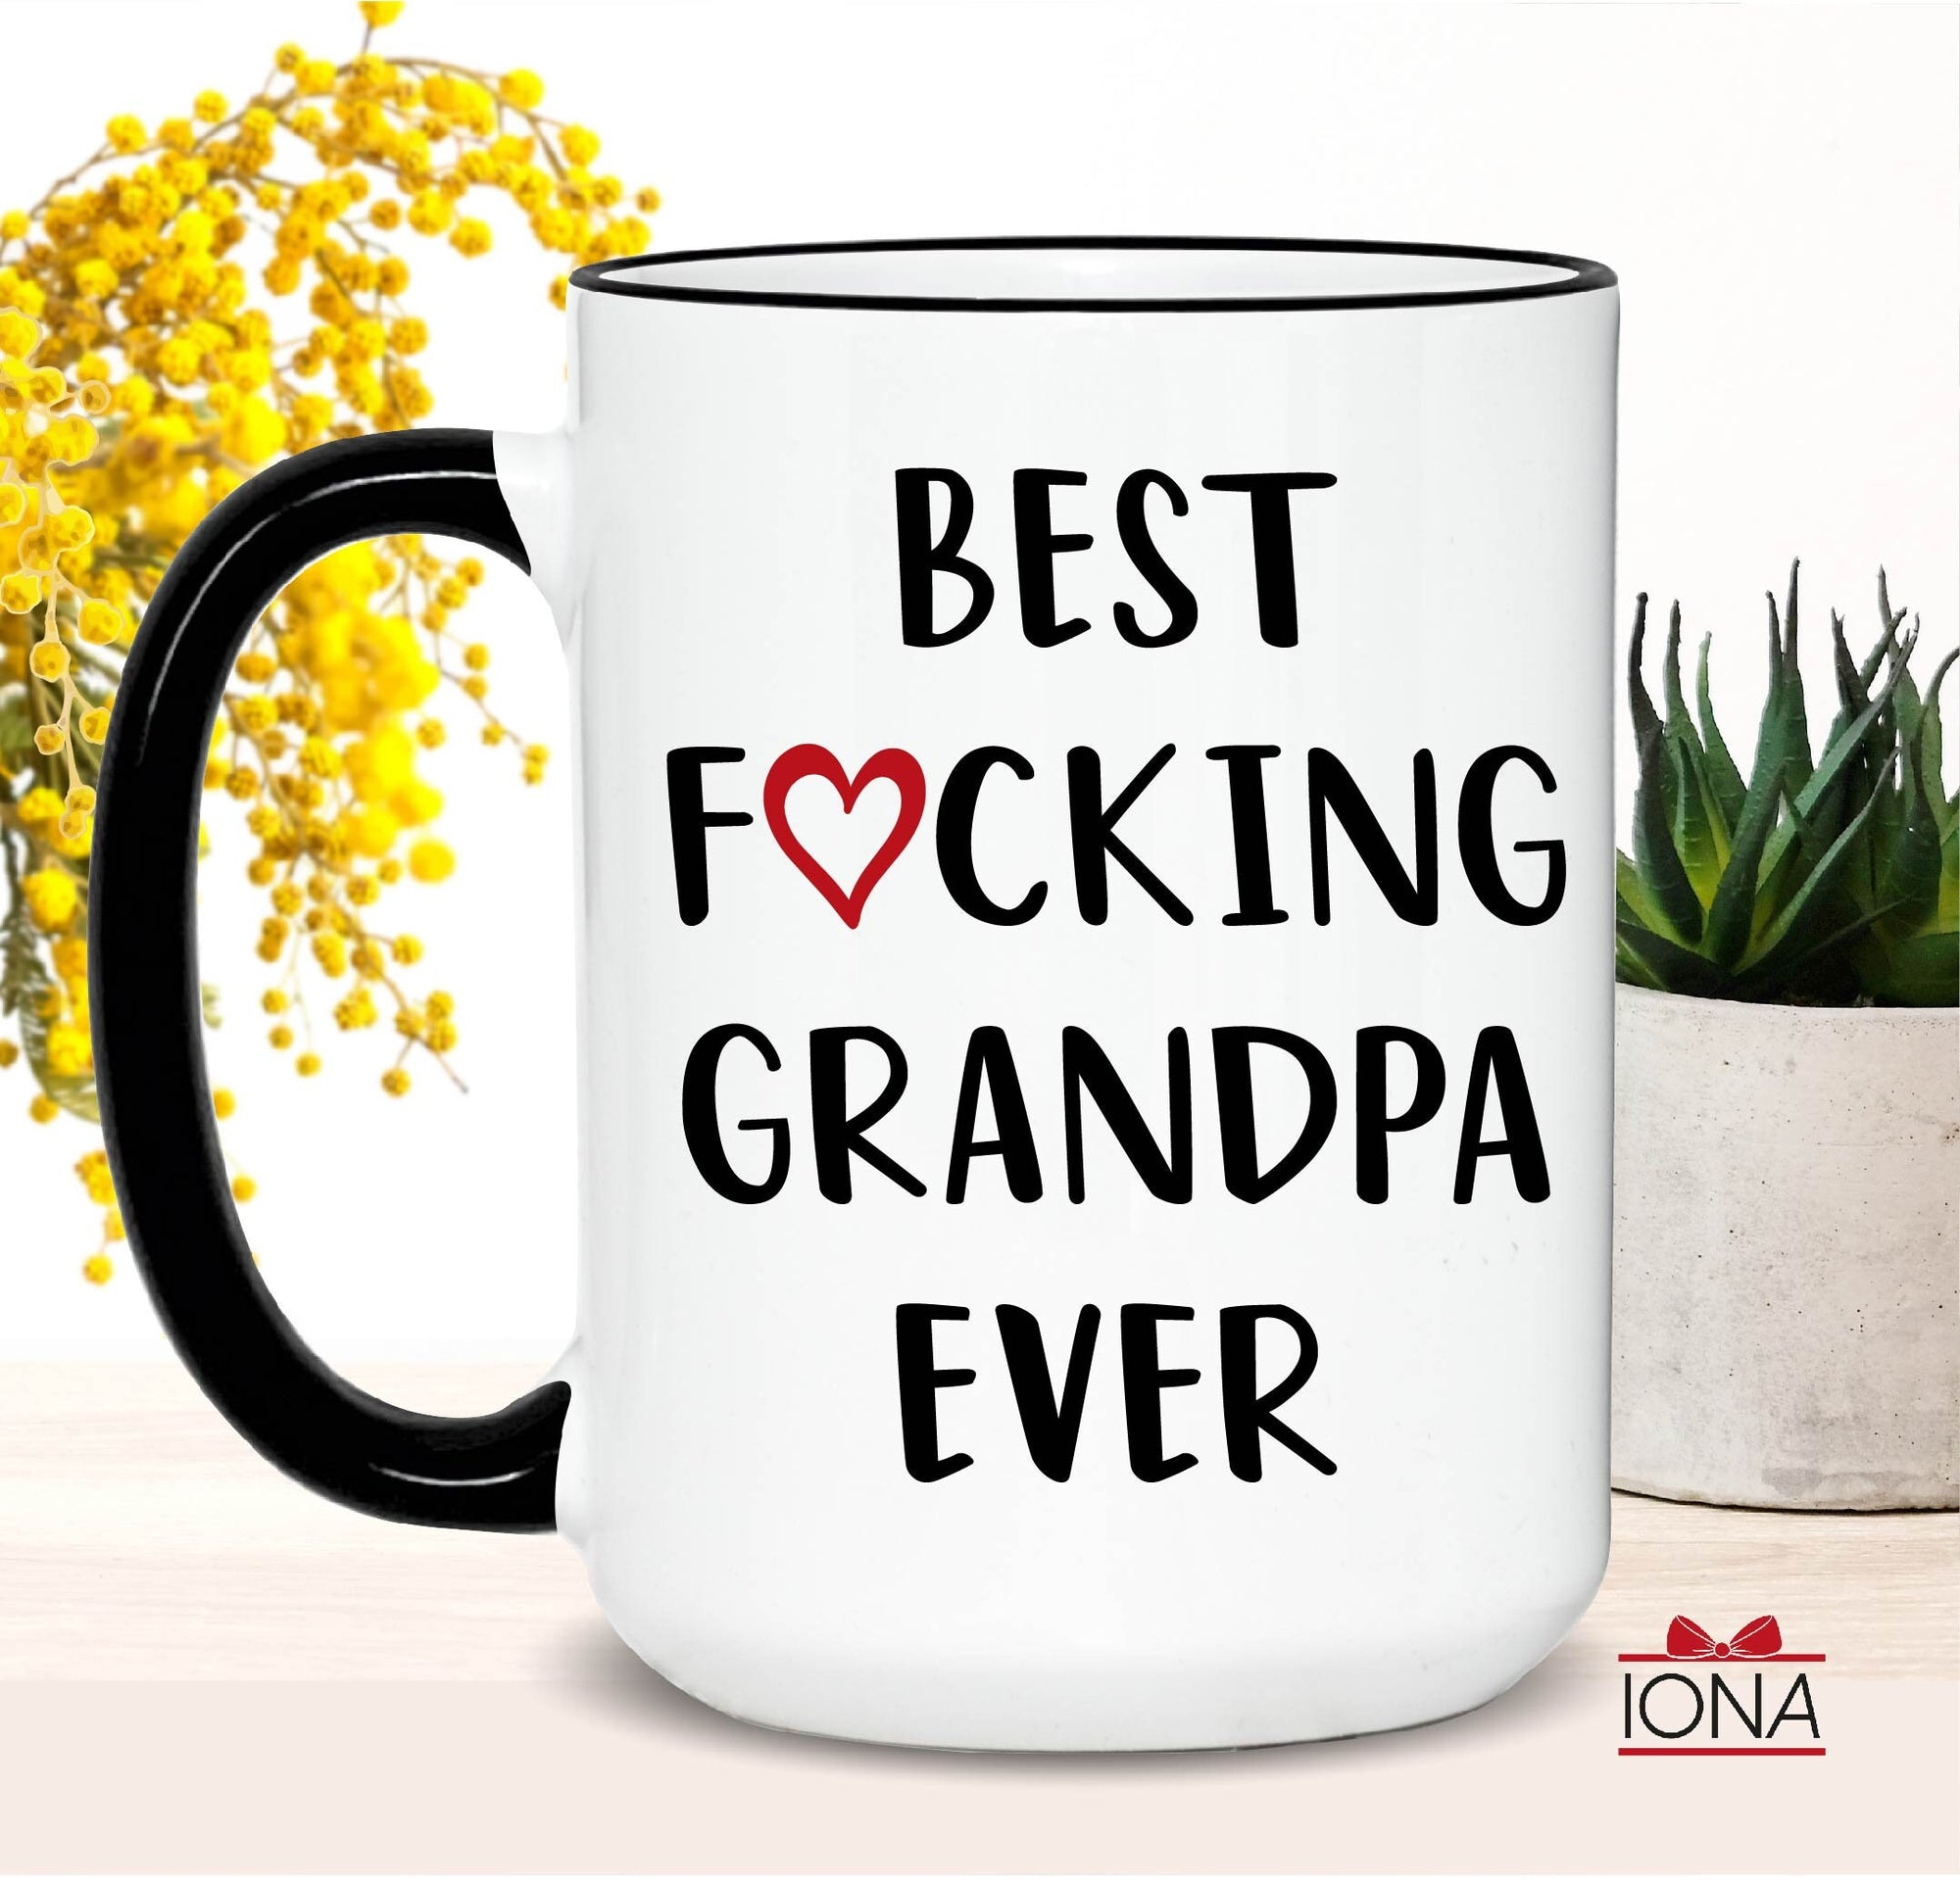 Personalized Funny Grandpa Gift, Best Grandpa Ever Mug, Grandpa Coffee Mug, Best Fucking Grandpa Ever Mug, Christmas Gift, Fathers Day